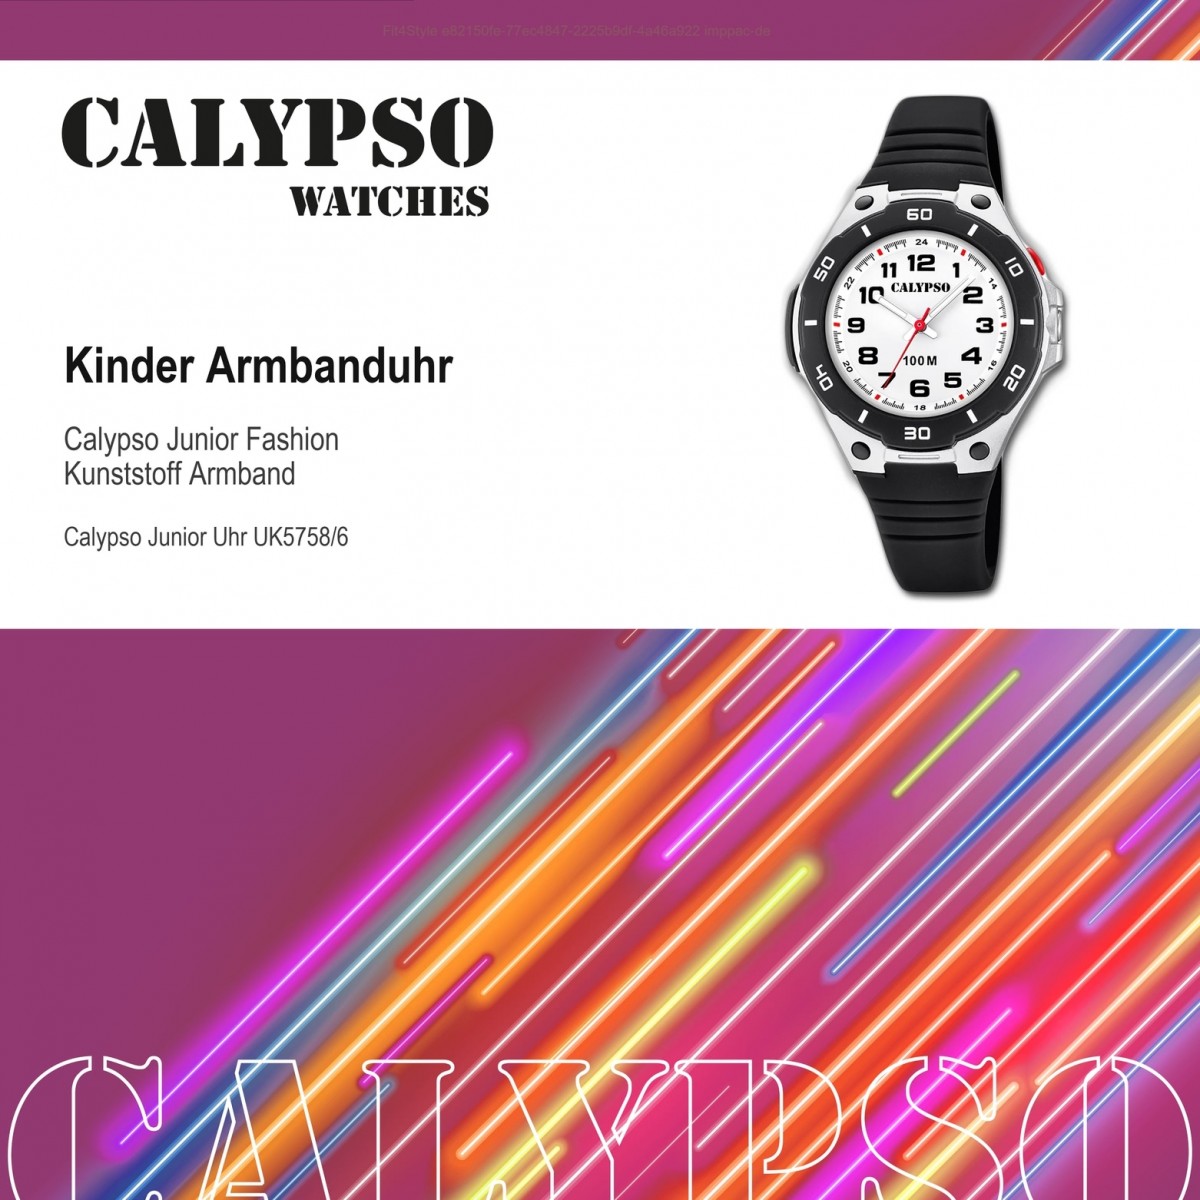 Quarz-Uhr Time Sweet Armbanduhr Kinder PU schwarz UK5758/6 K5758/6 Calypso